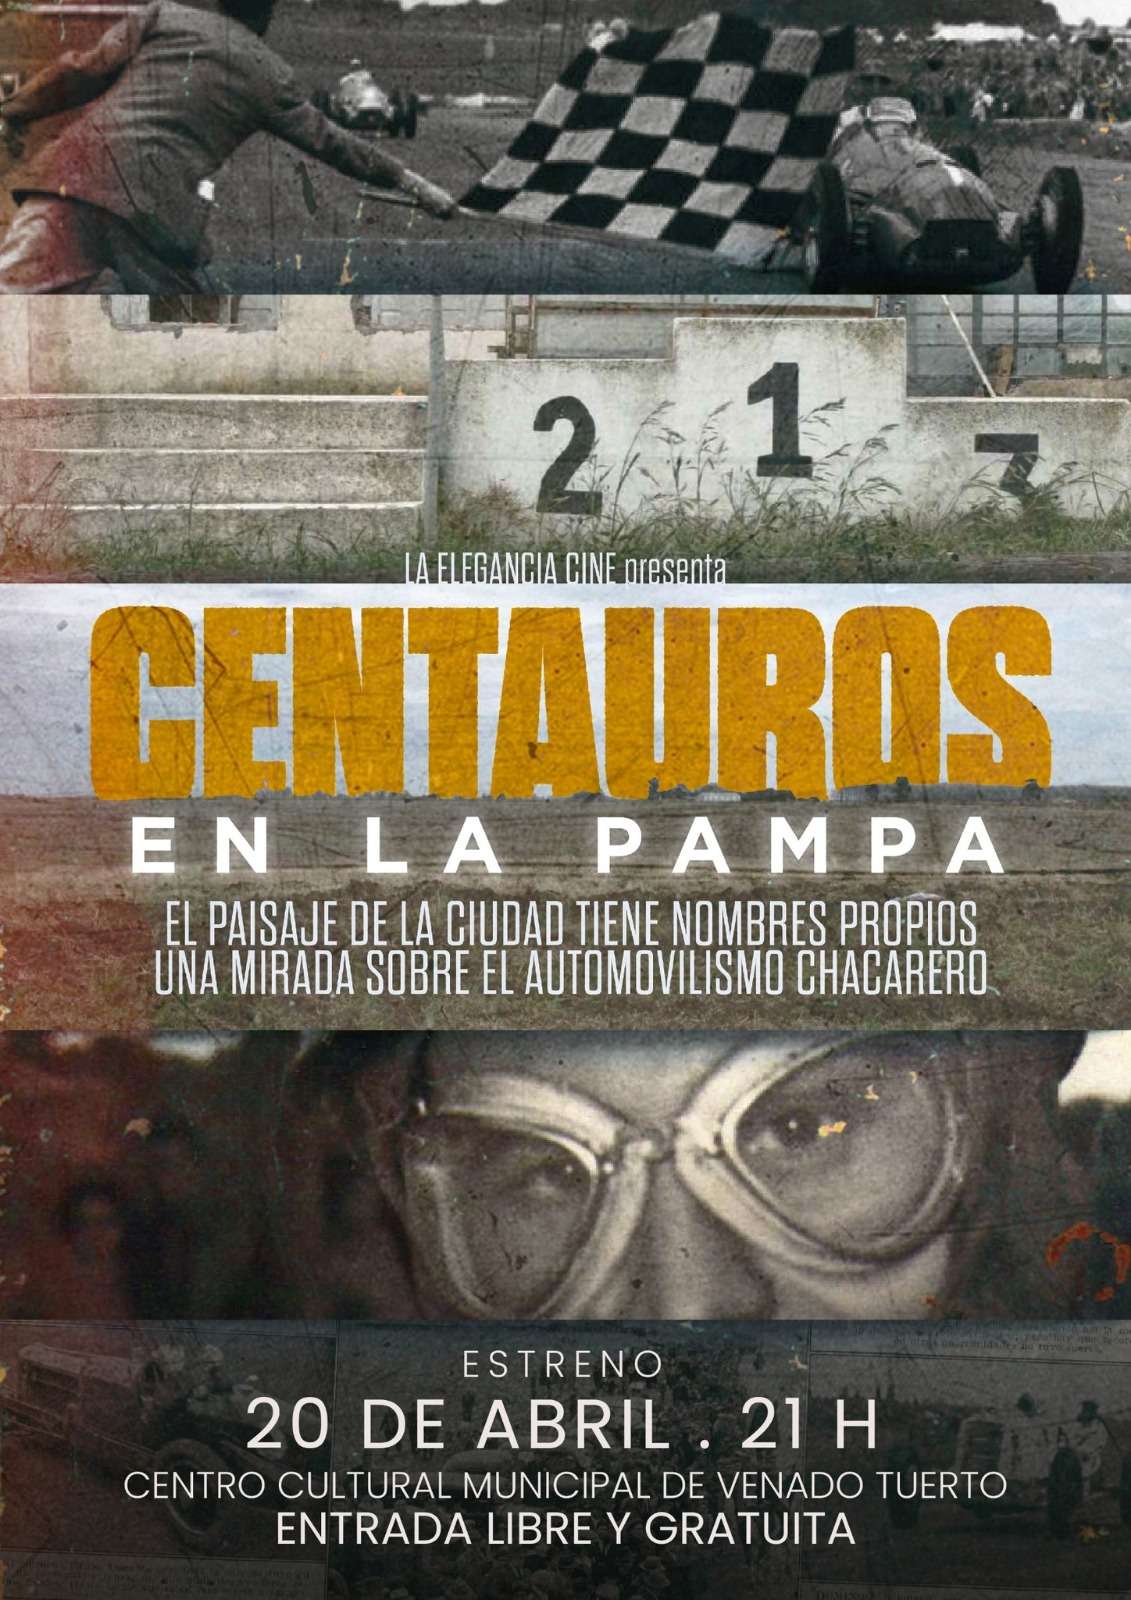 Centauros en La Pampa